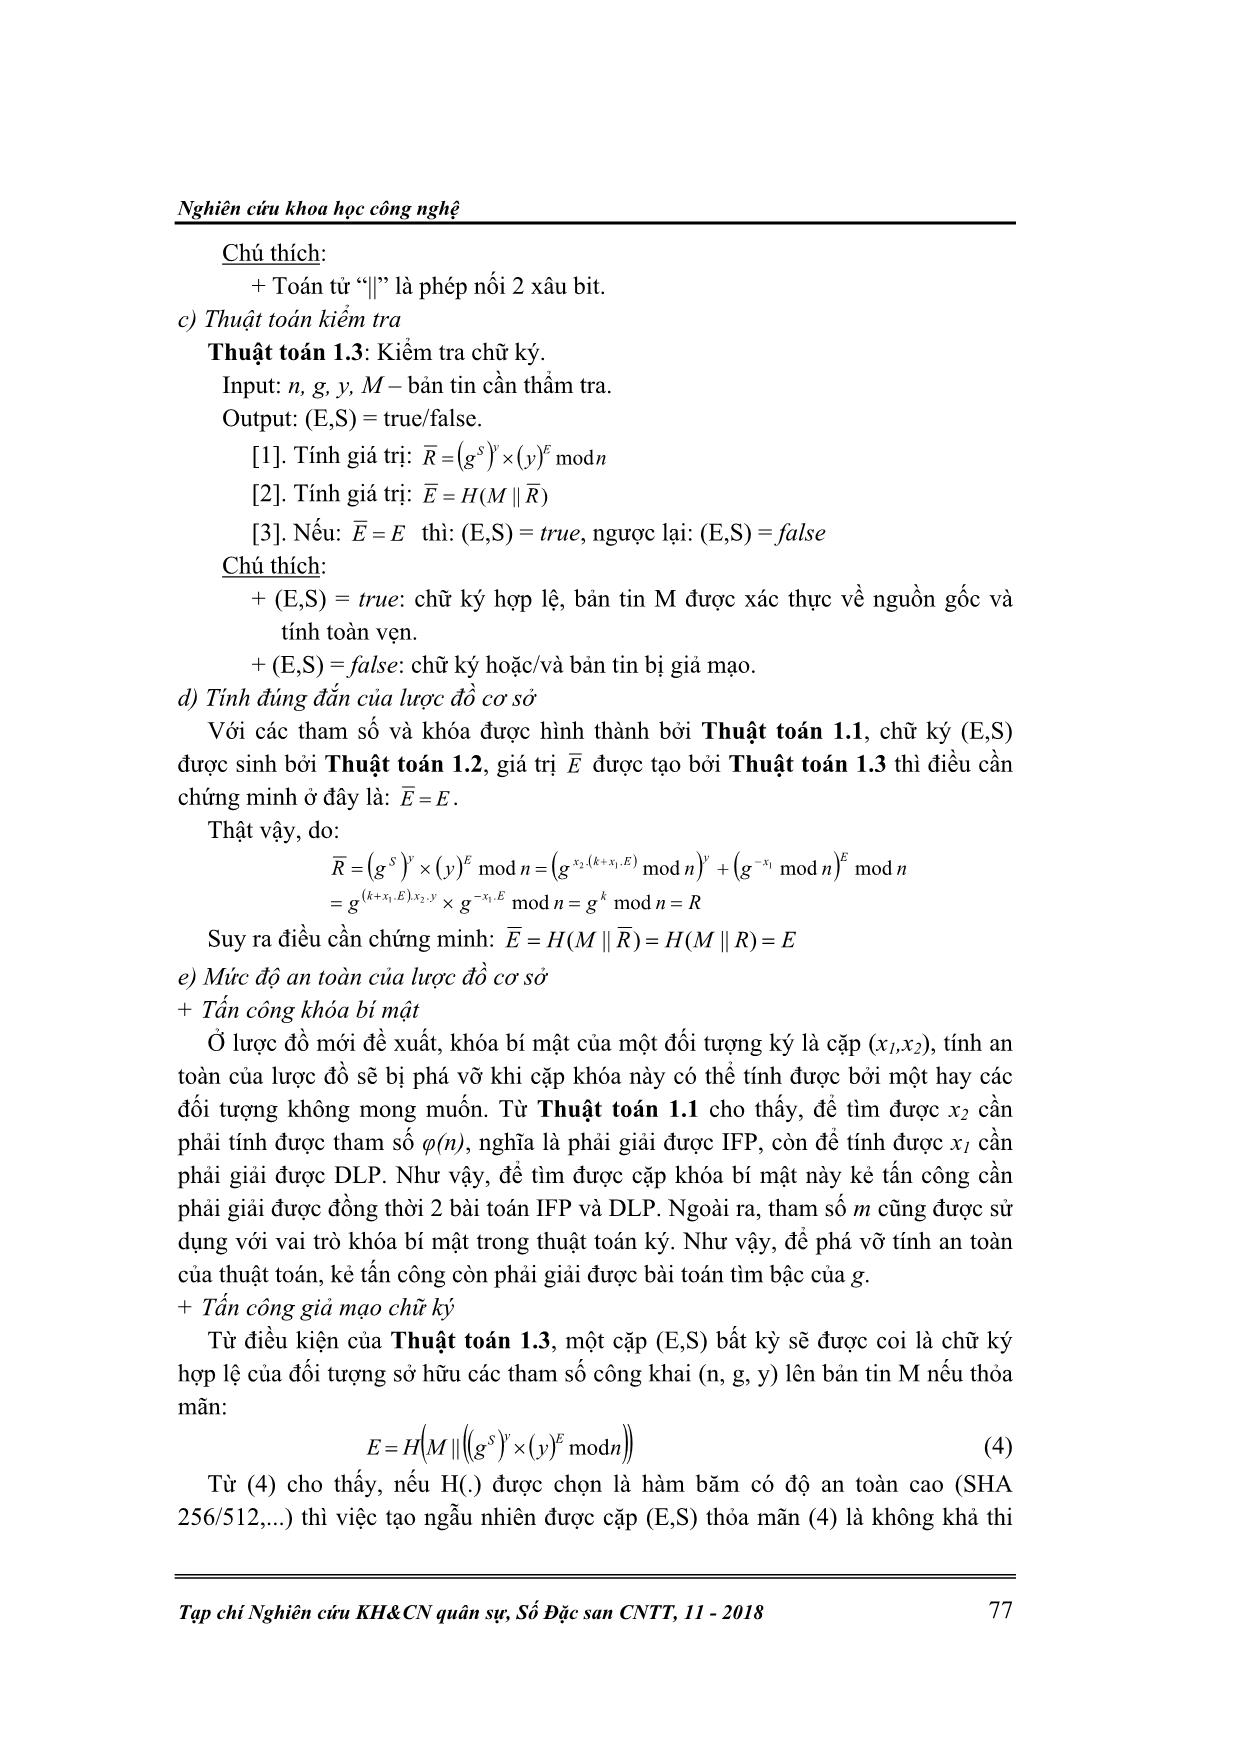 Phát triển thuật toán chữ ký số tập thể trang 4